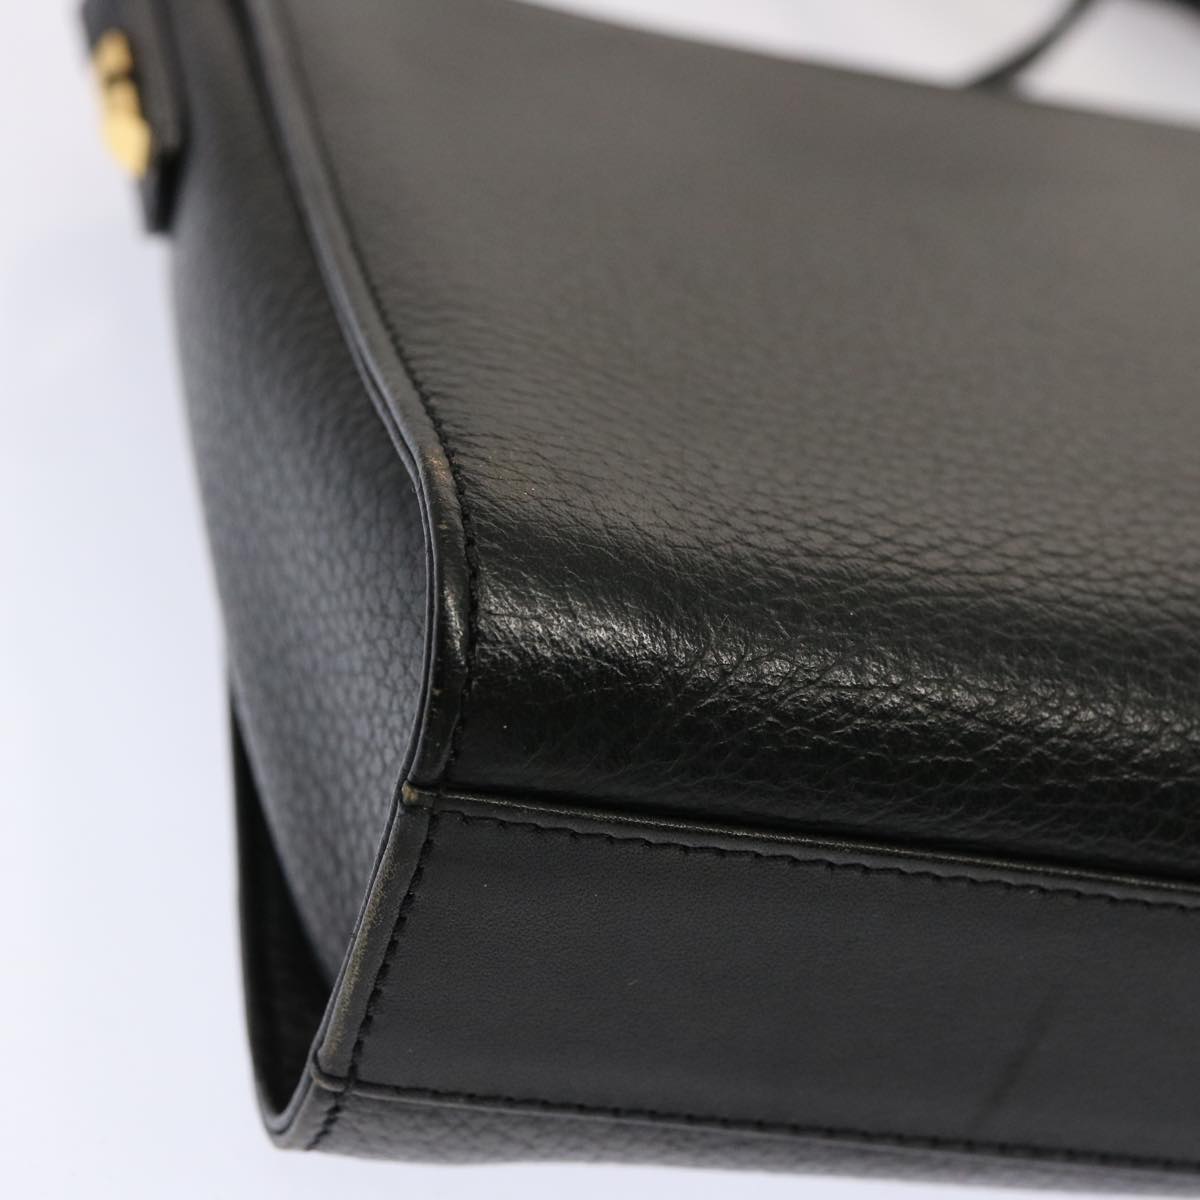 Burberrys Shoulder Bag Leather Black Auth mr101